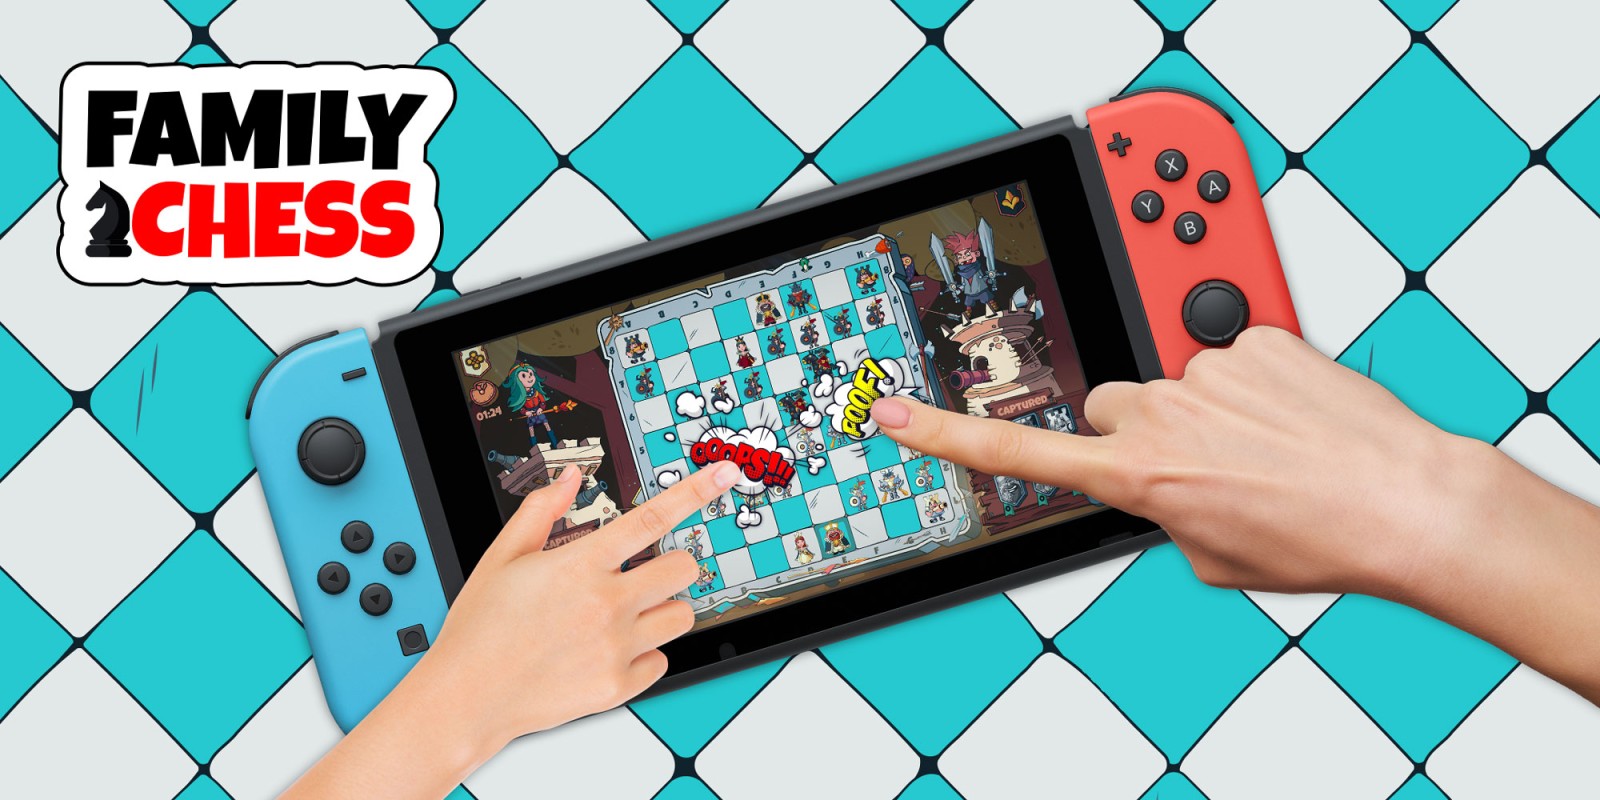 sinsonte golf marco Family Chess | Programas descargables Nintendo Switch | Juegos | Nintendo